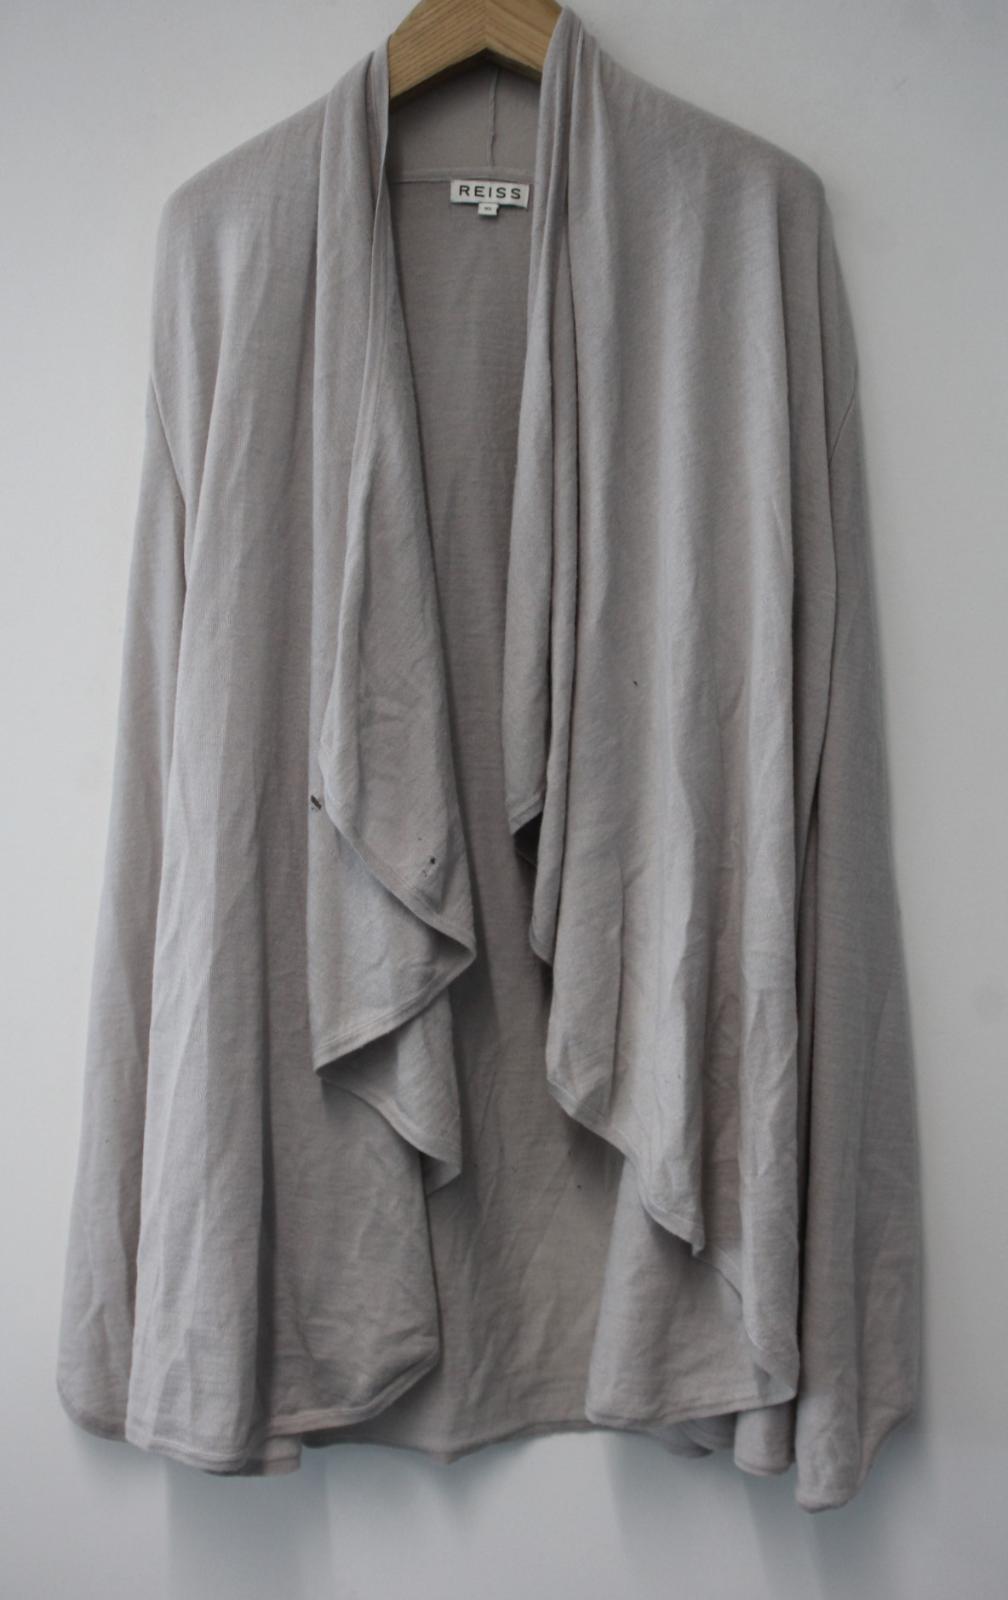 REISS Ladies Light Grey Merino Wool Blend Open Front Longline Cardigan Size XS